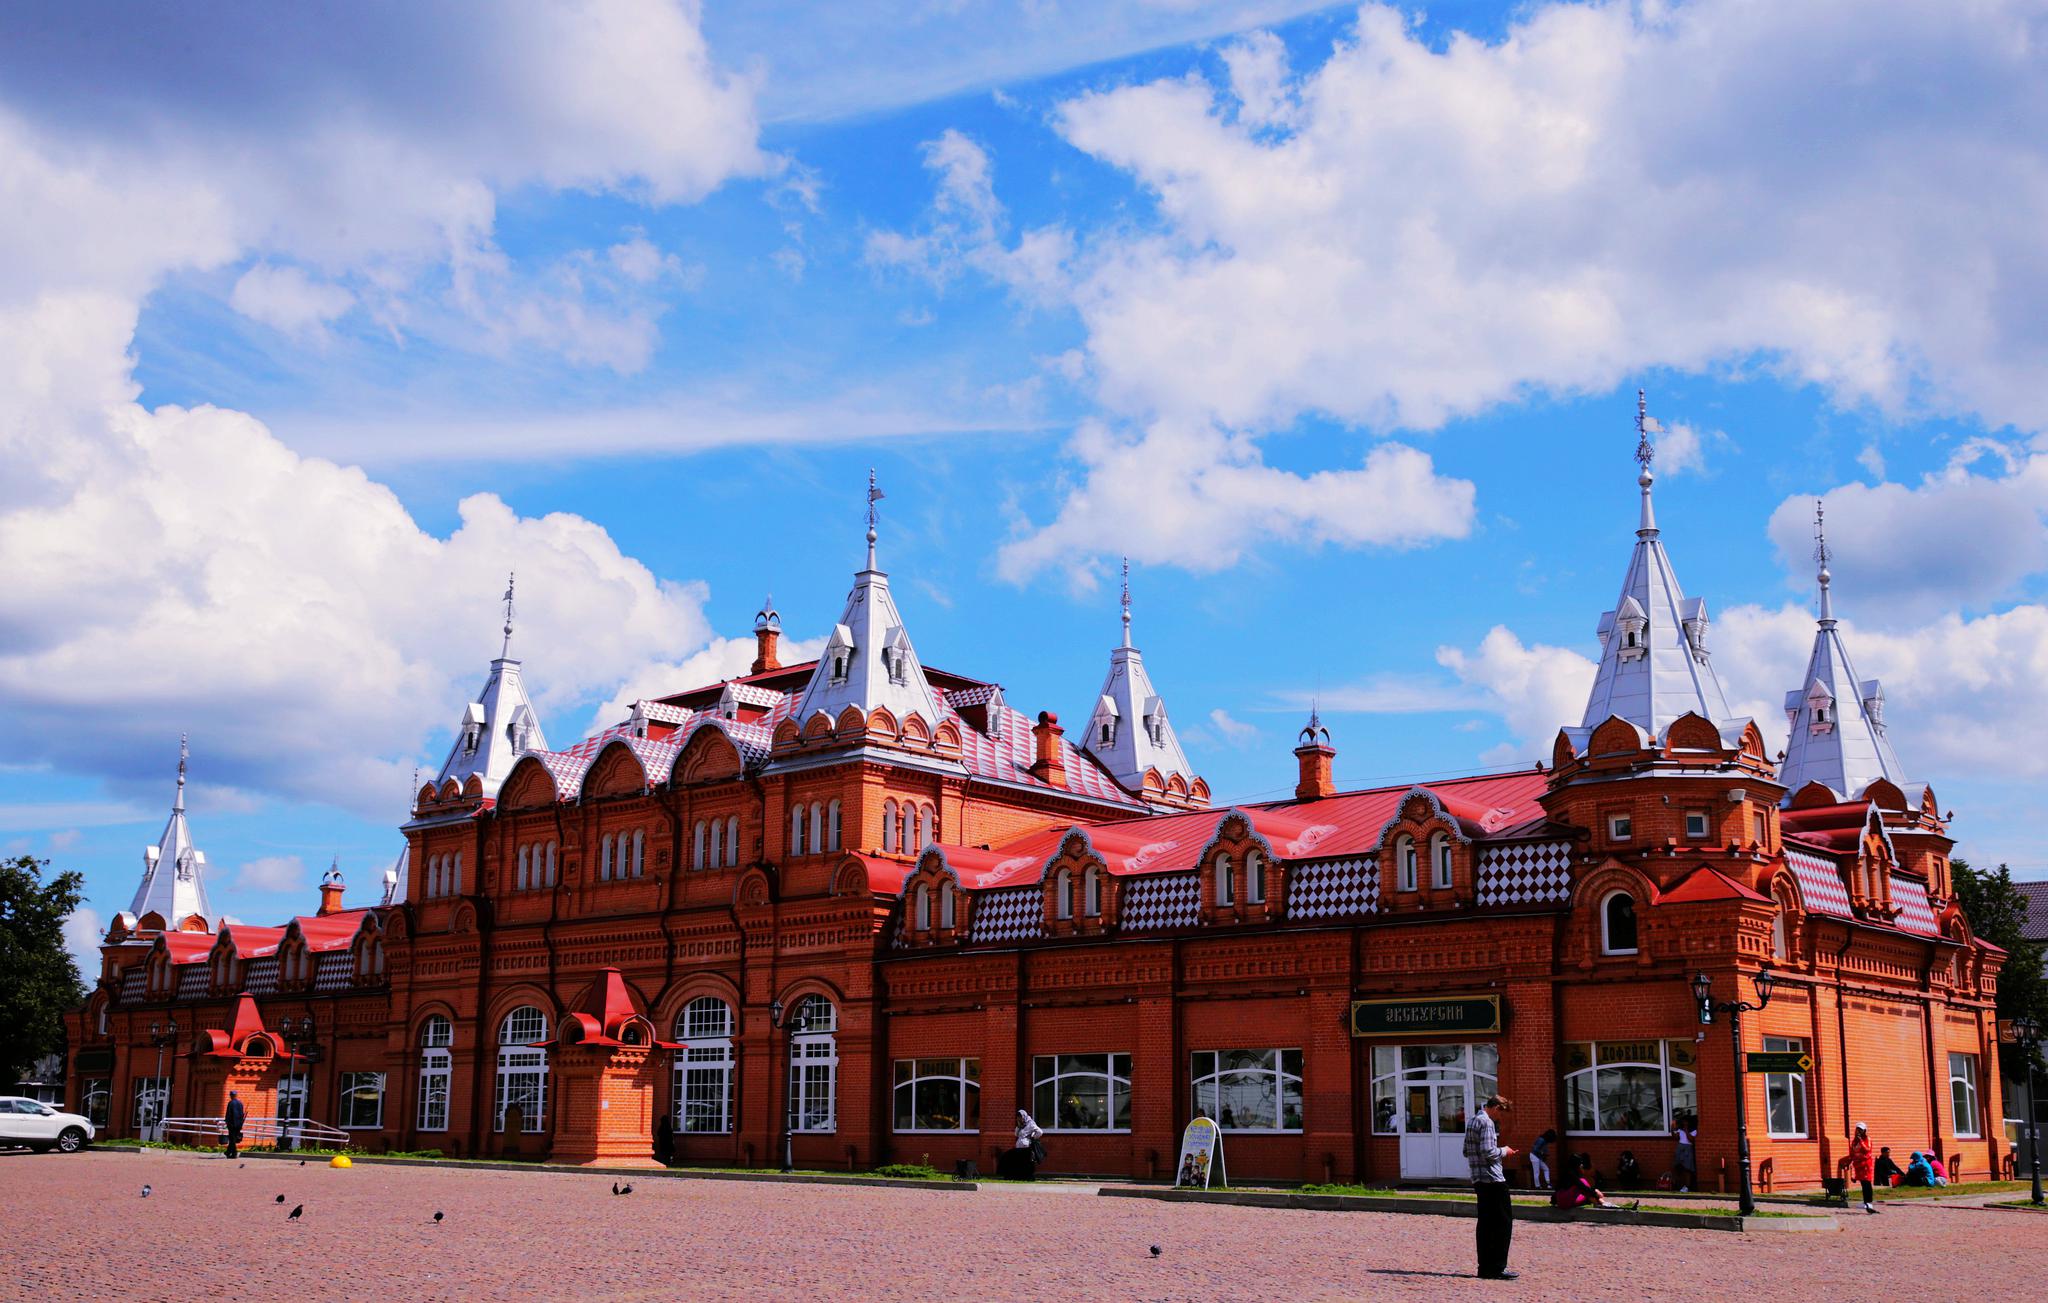 俄罗斯乡村小镇风景图片